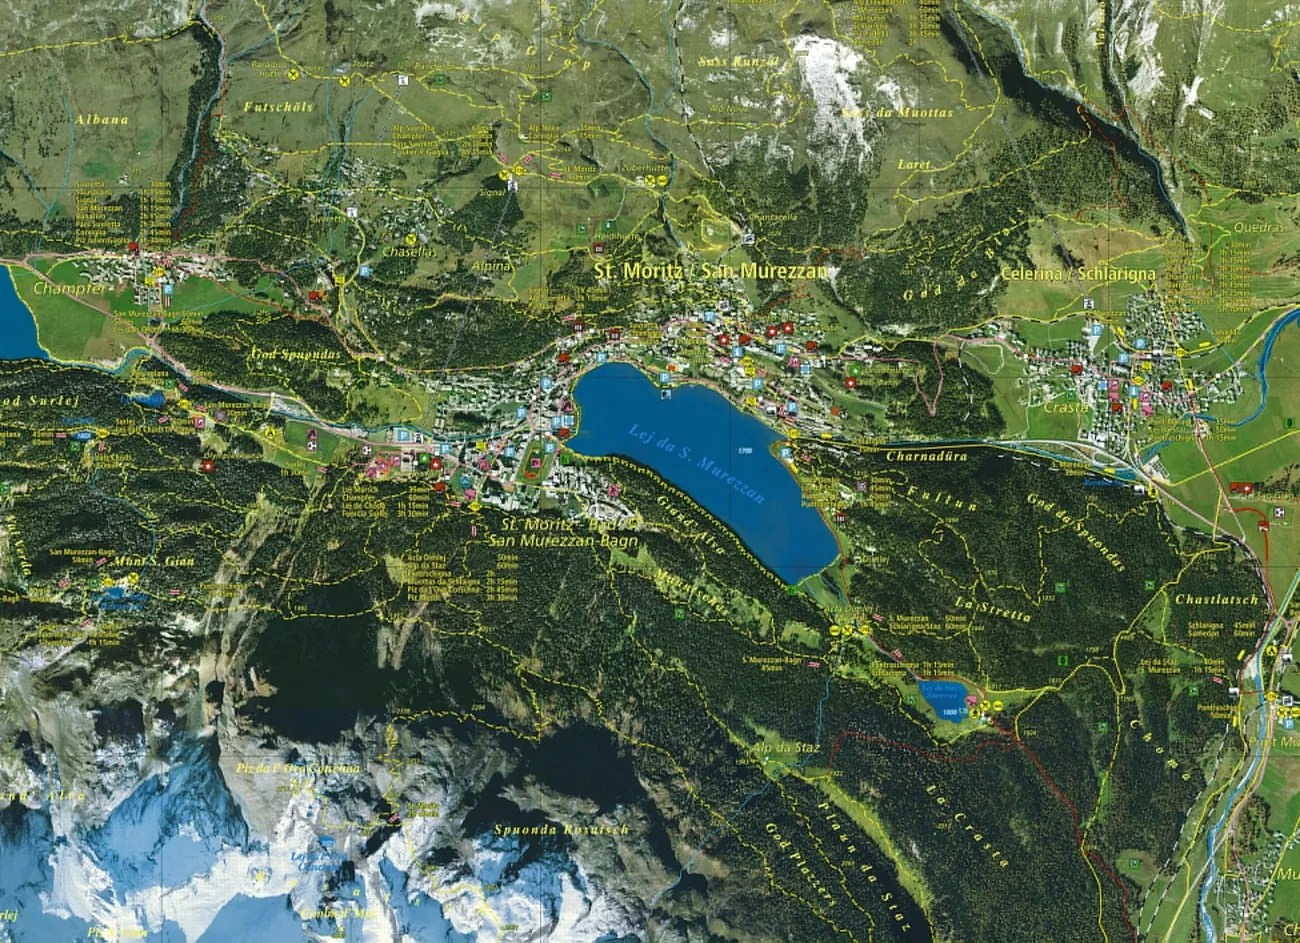 聖莫里茲 (St. Moritz) 的數位地圖將空拍影像與地形要素結合。地圖由Endoxon公司創立於2001年。